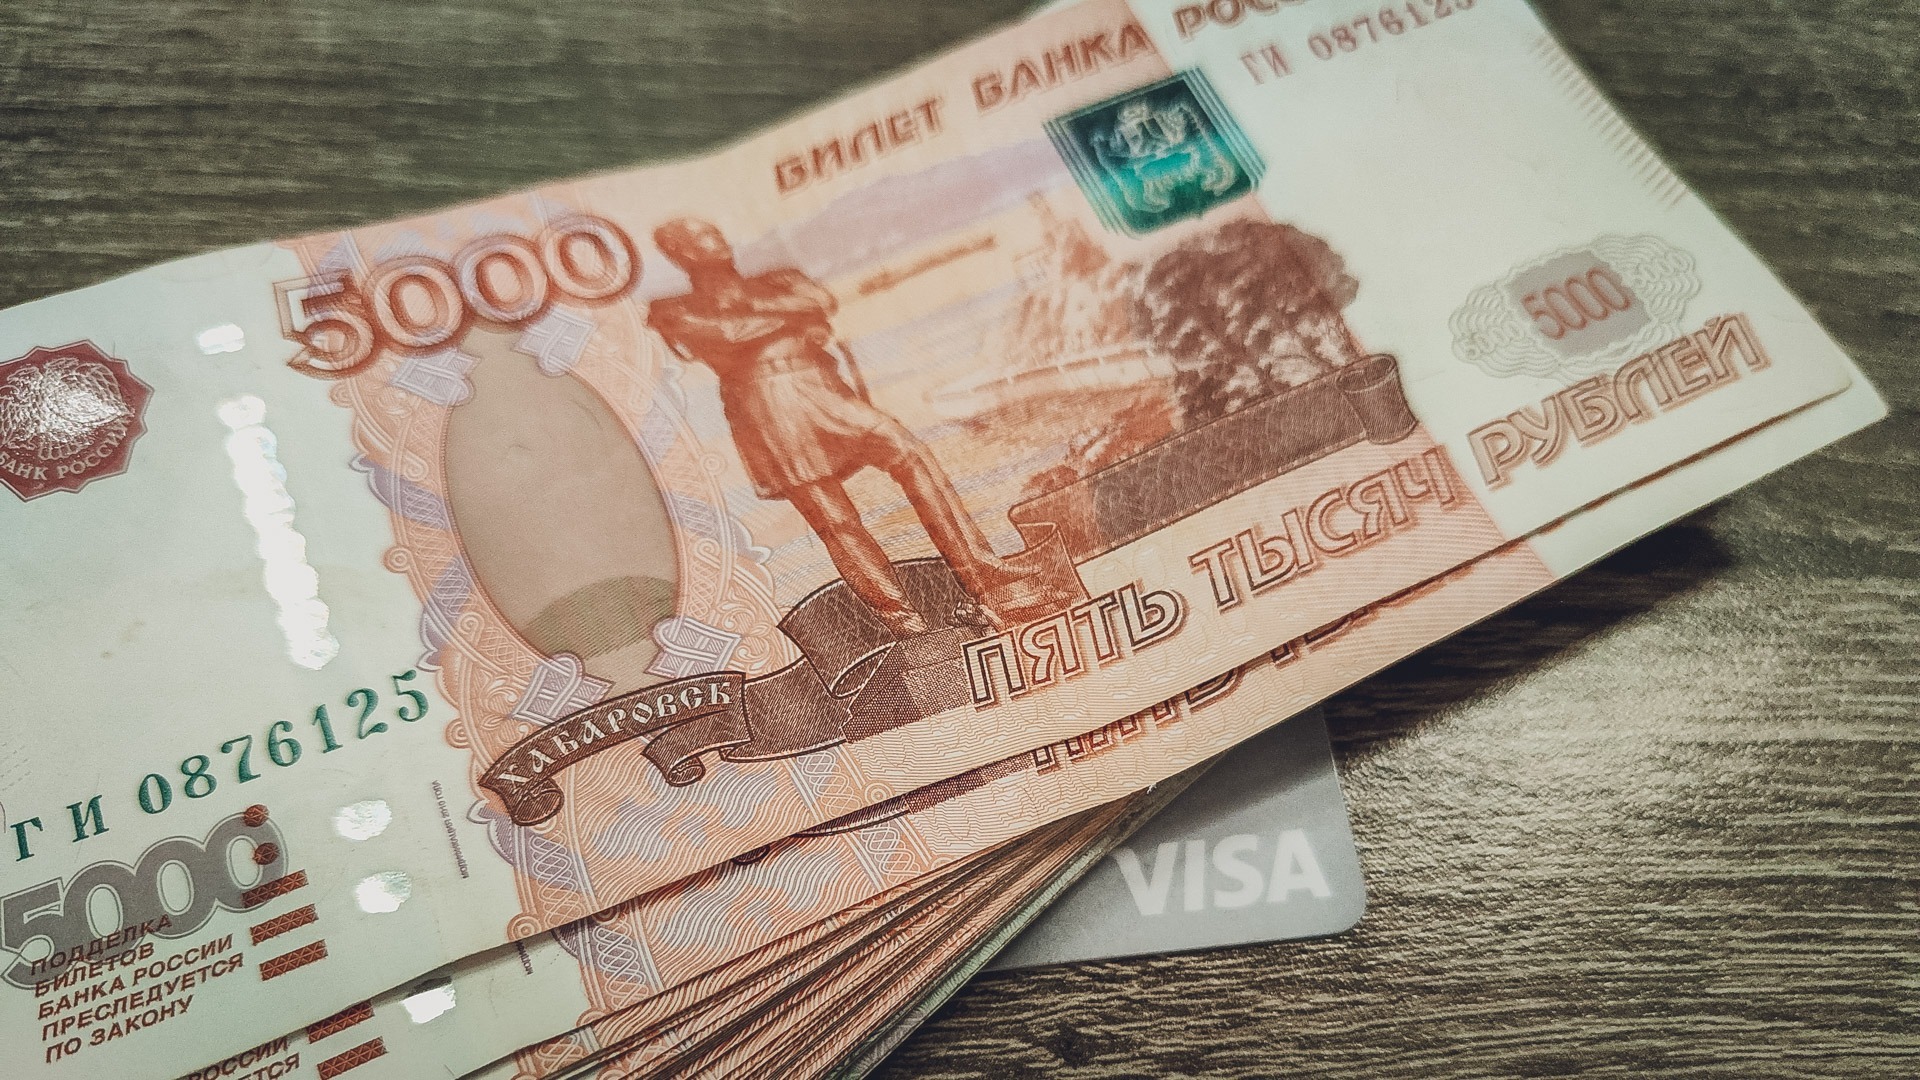 Женщина в Нижнем Тагиле забрала чужие деньги в KFC